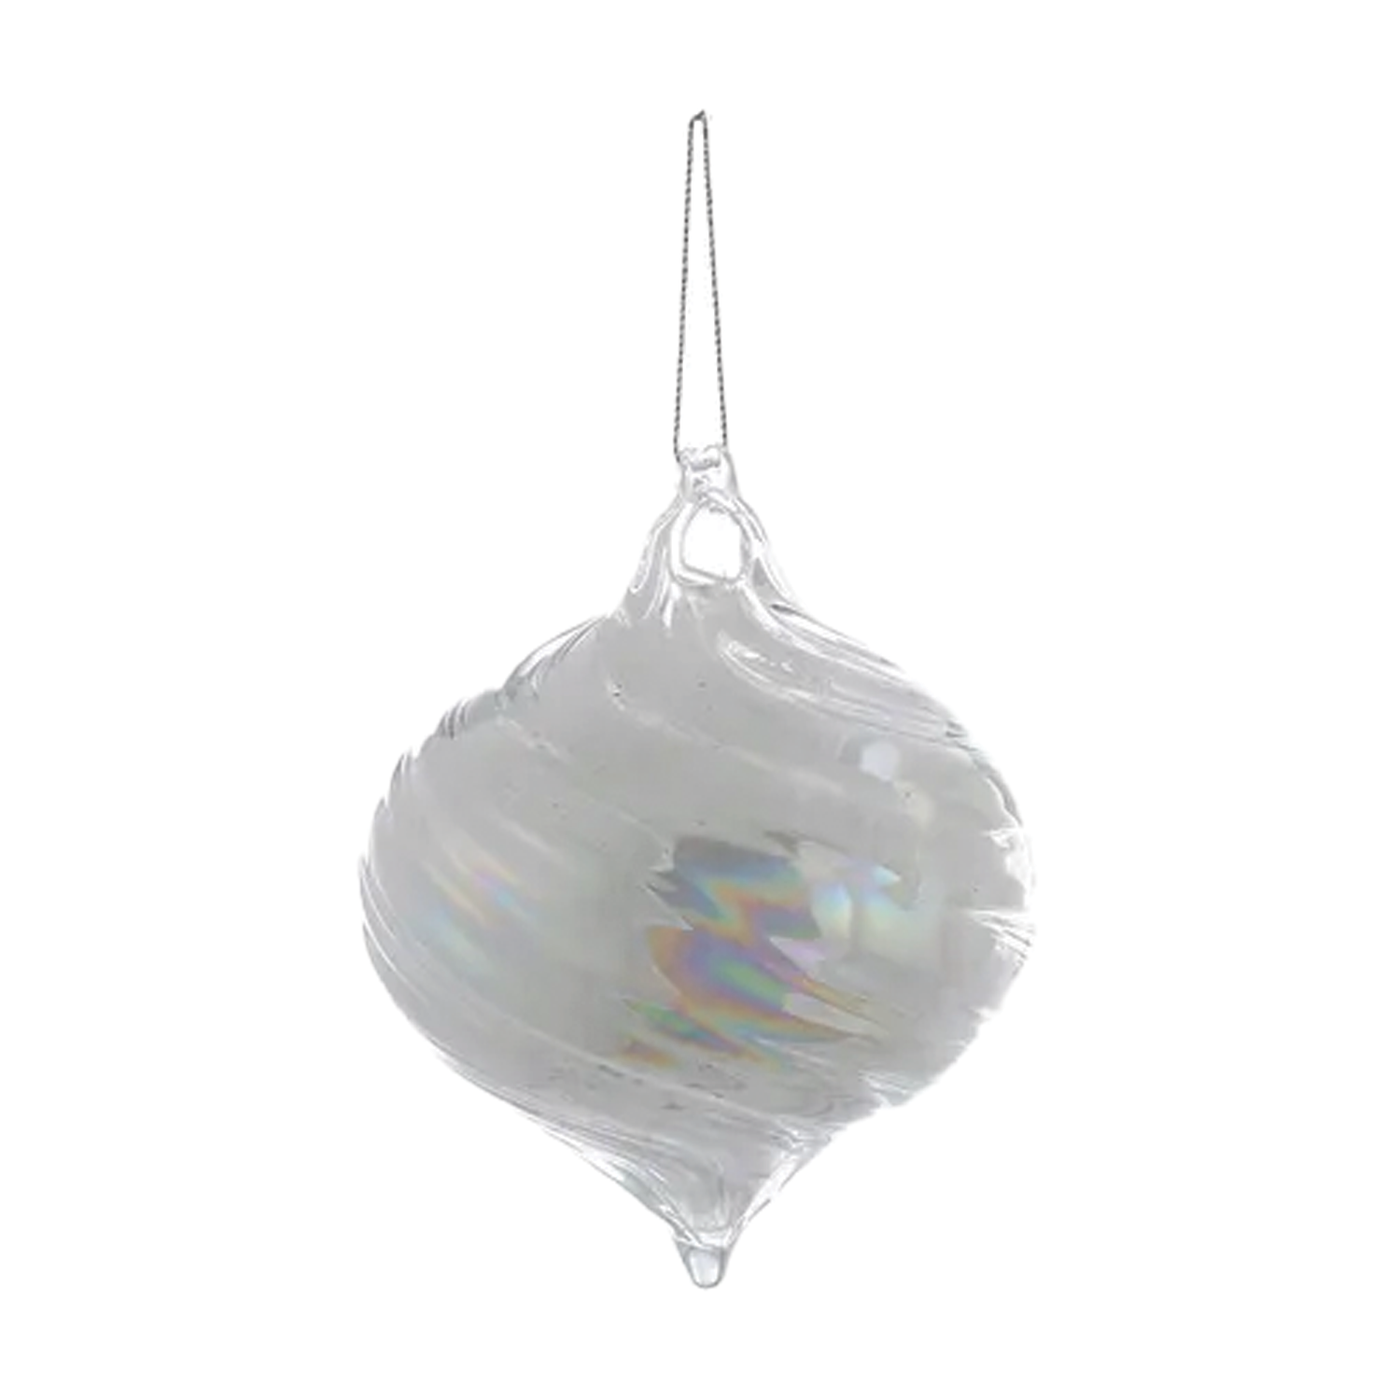 White Pearl Glass Ornament - Onion